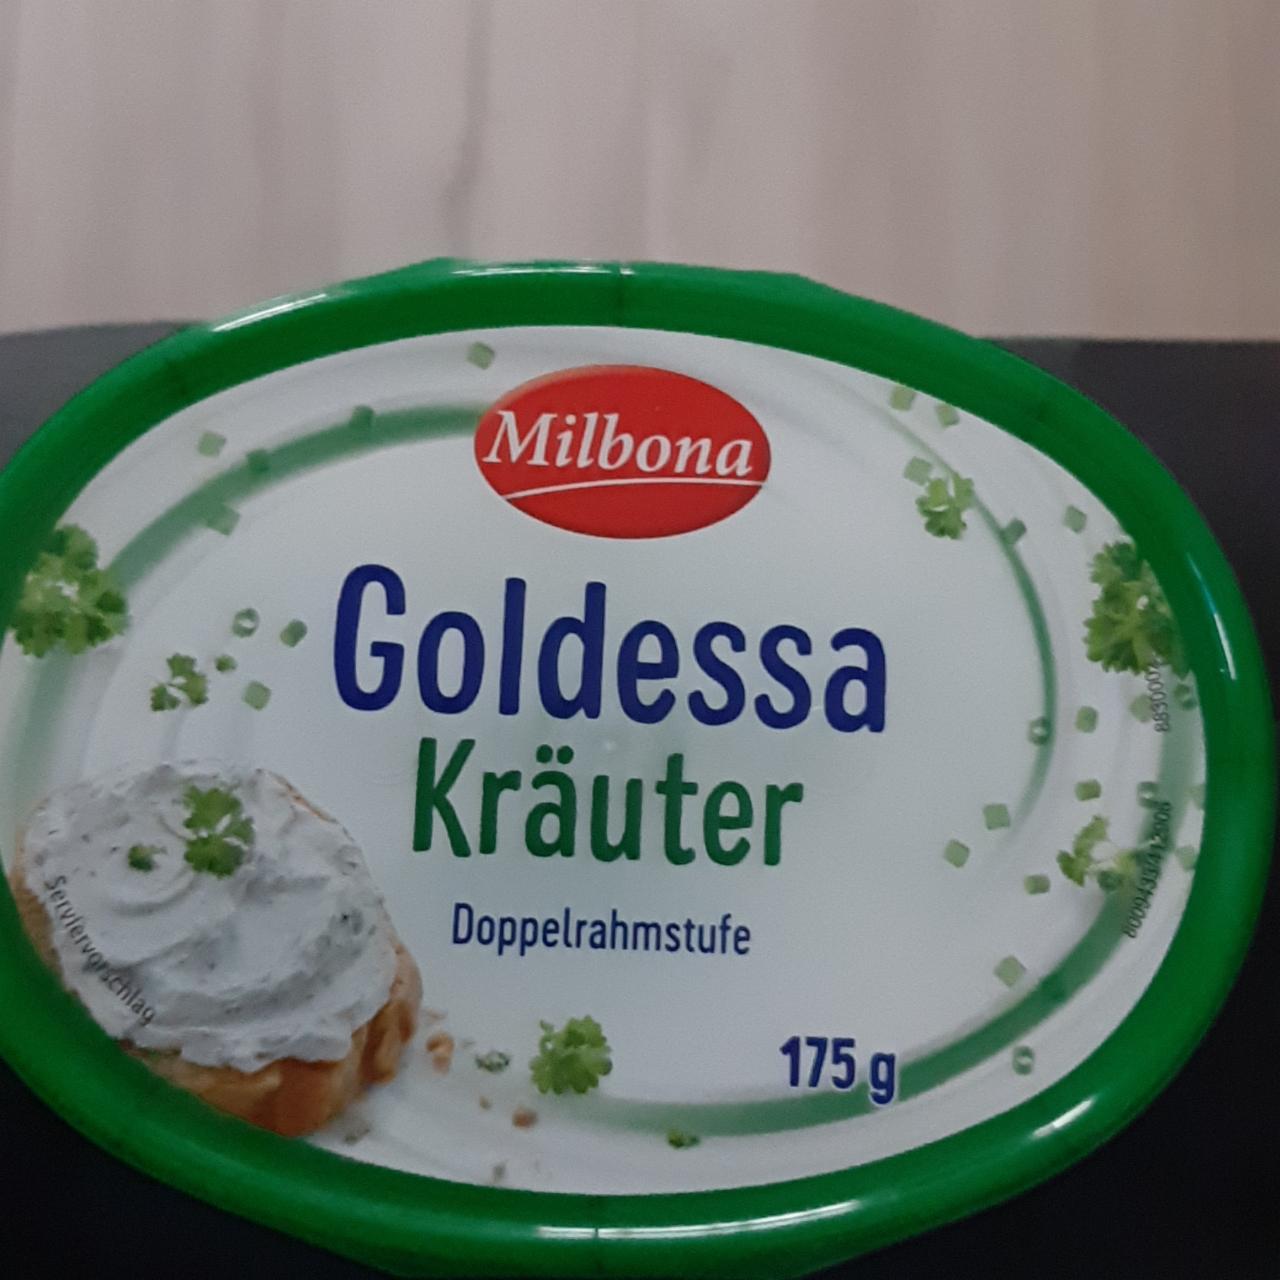 Fotografie - Goldessa Kräuter Frischkäse Milbona